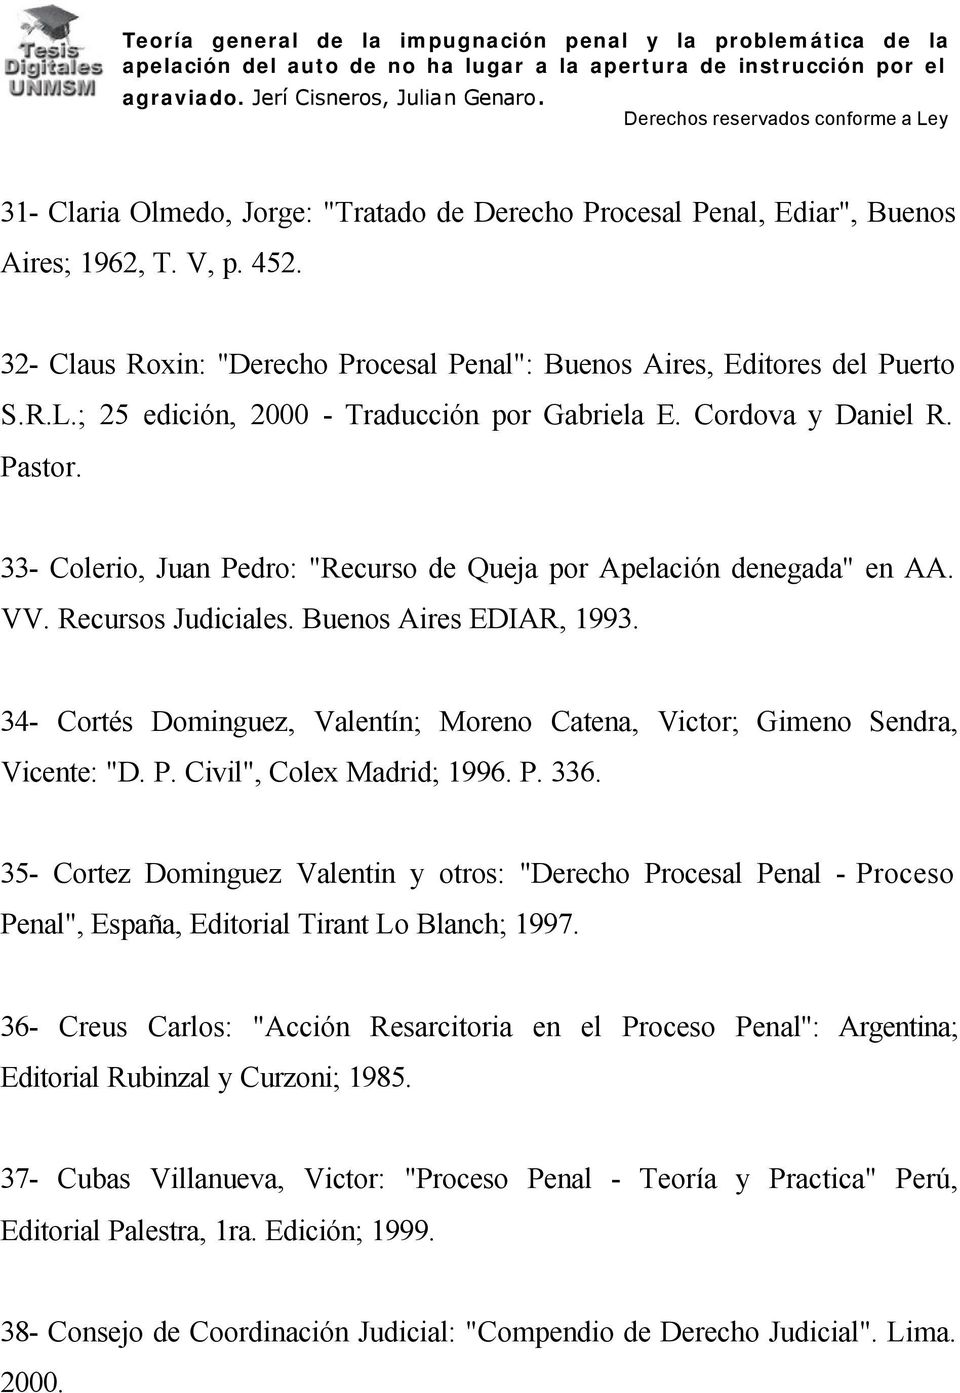 34- Cortés Dominguez, Valentín; Moreno Catena, Victor; Gimeno Sendra, Vicente: "D. P. Civil", Colex Madrid; 1996. P. 336.